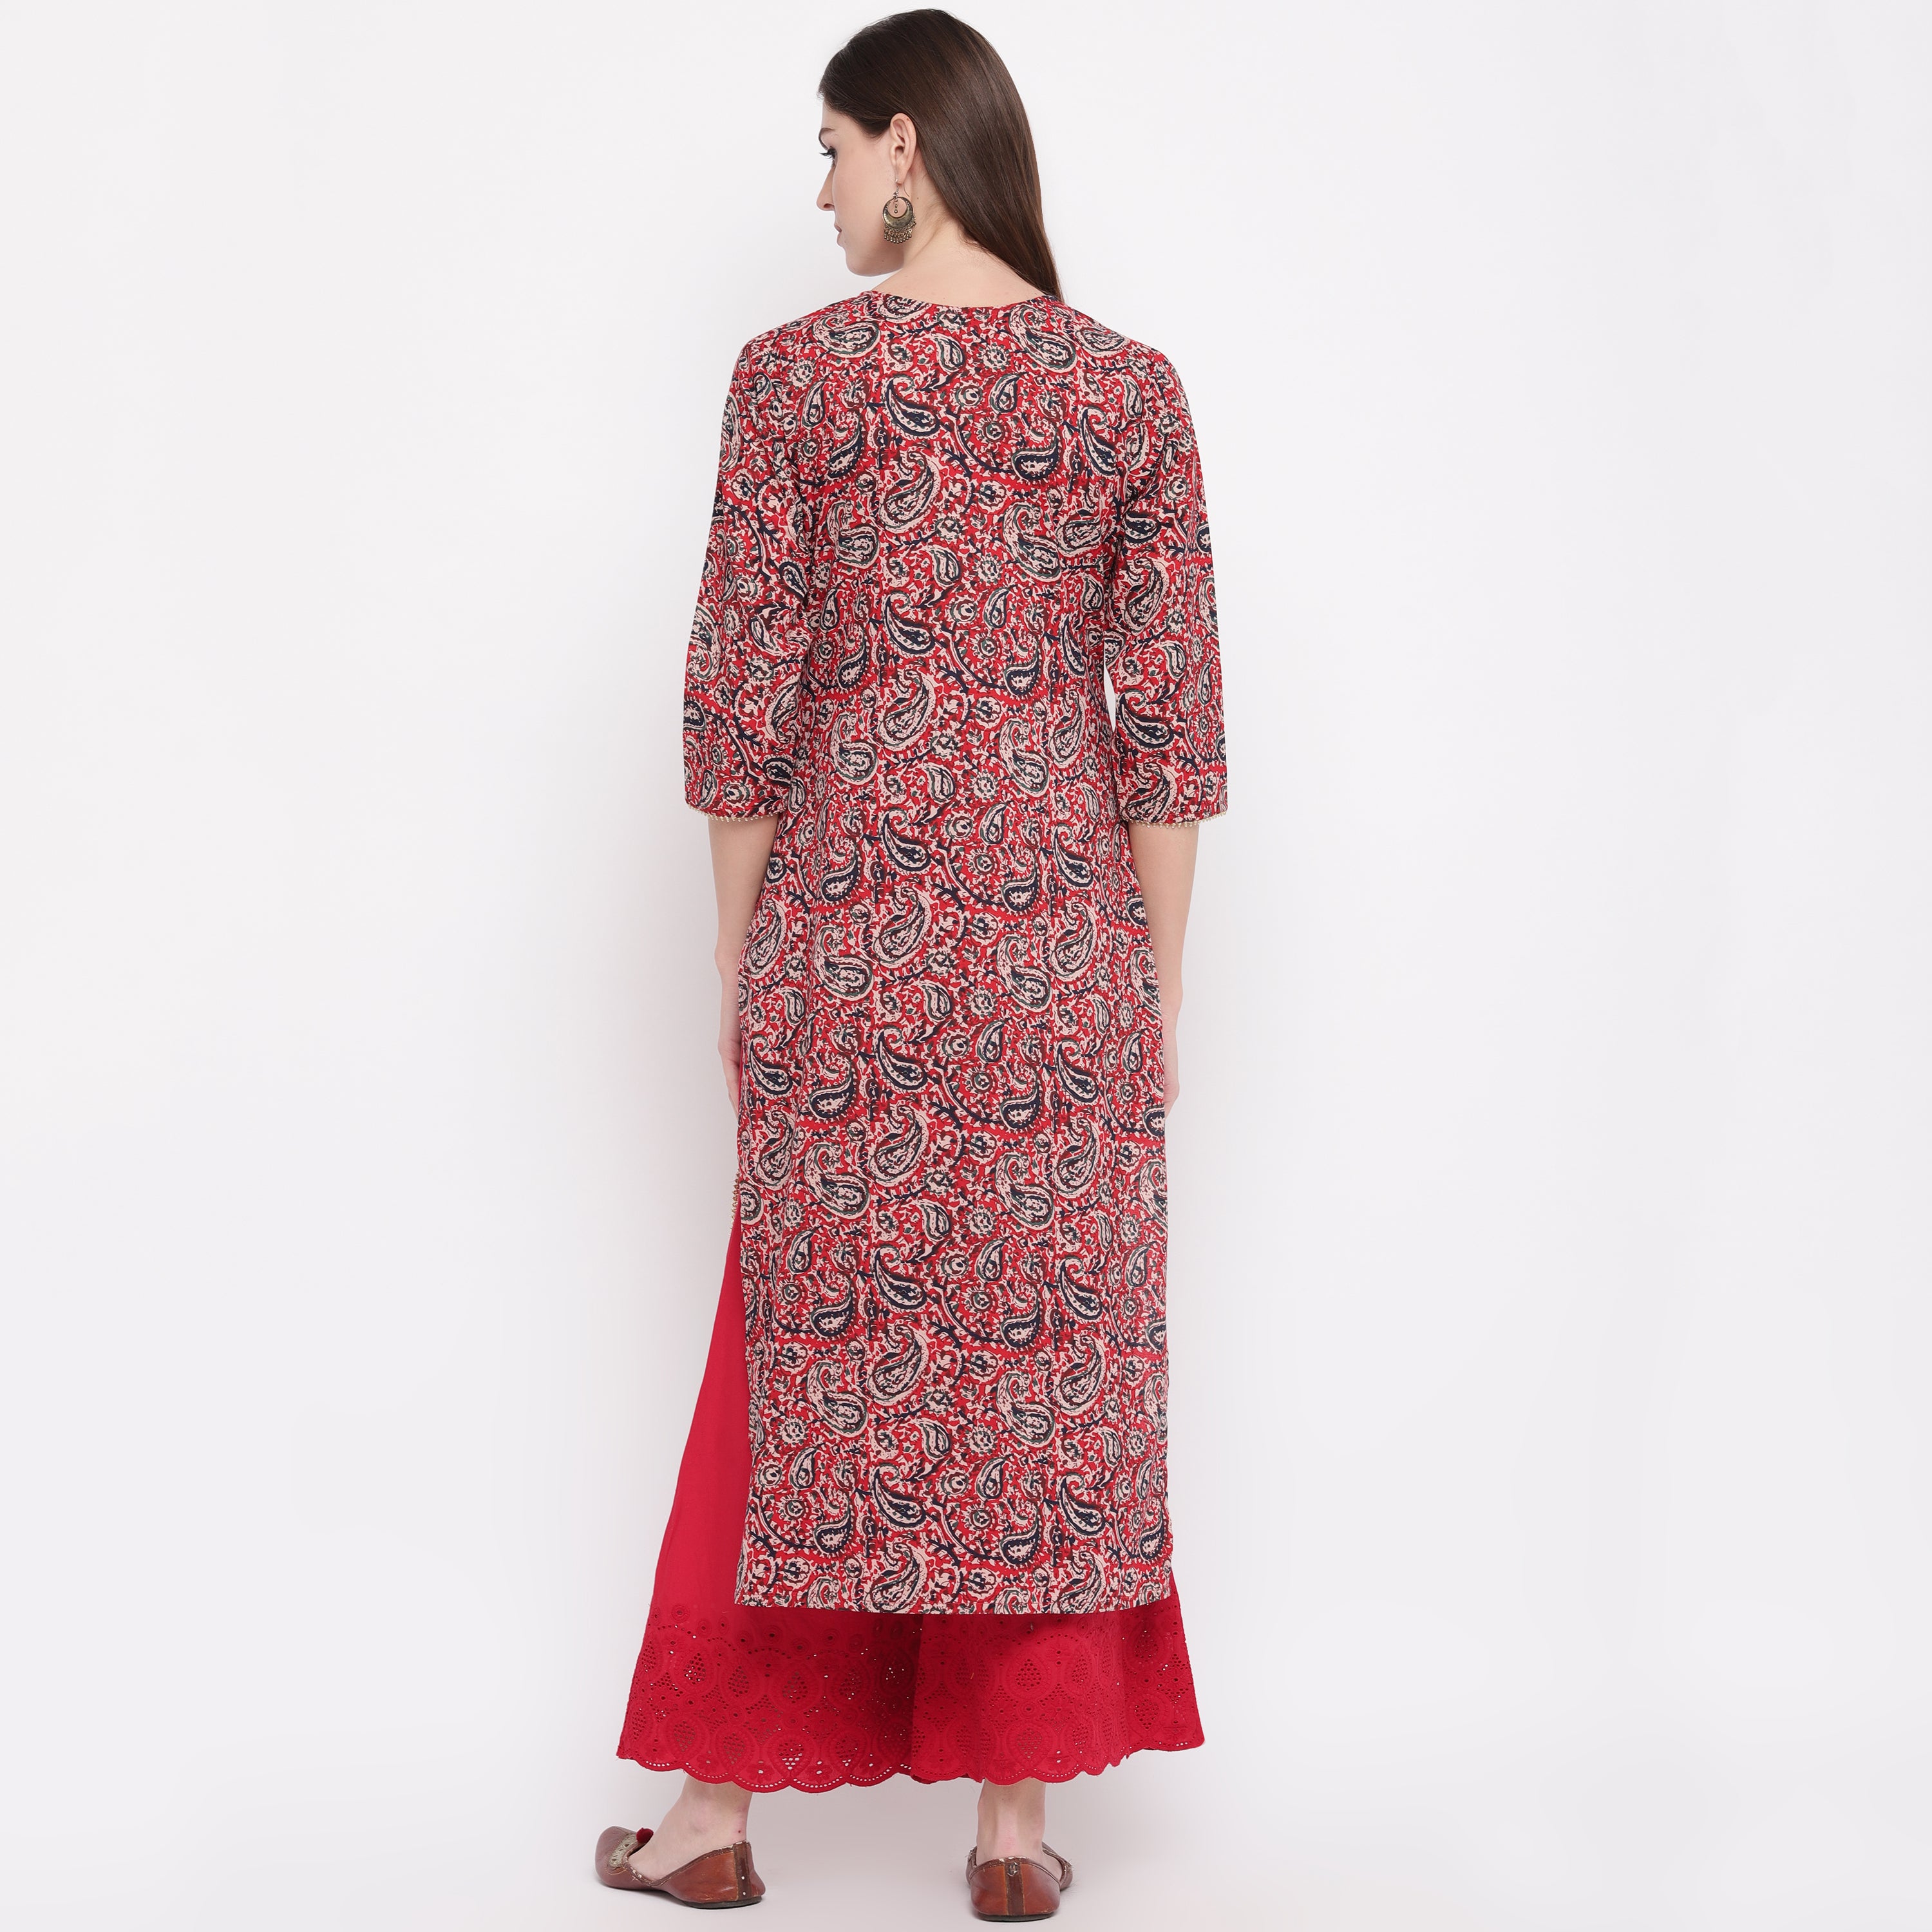 Women's Red Kalamkari Print Cotton Kurta By Vbuyz- (1Pc Set)